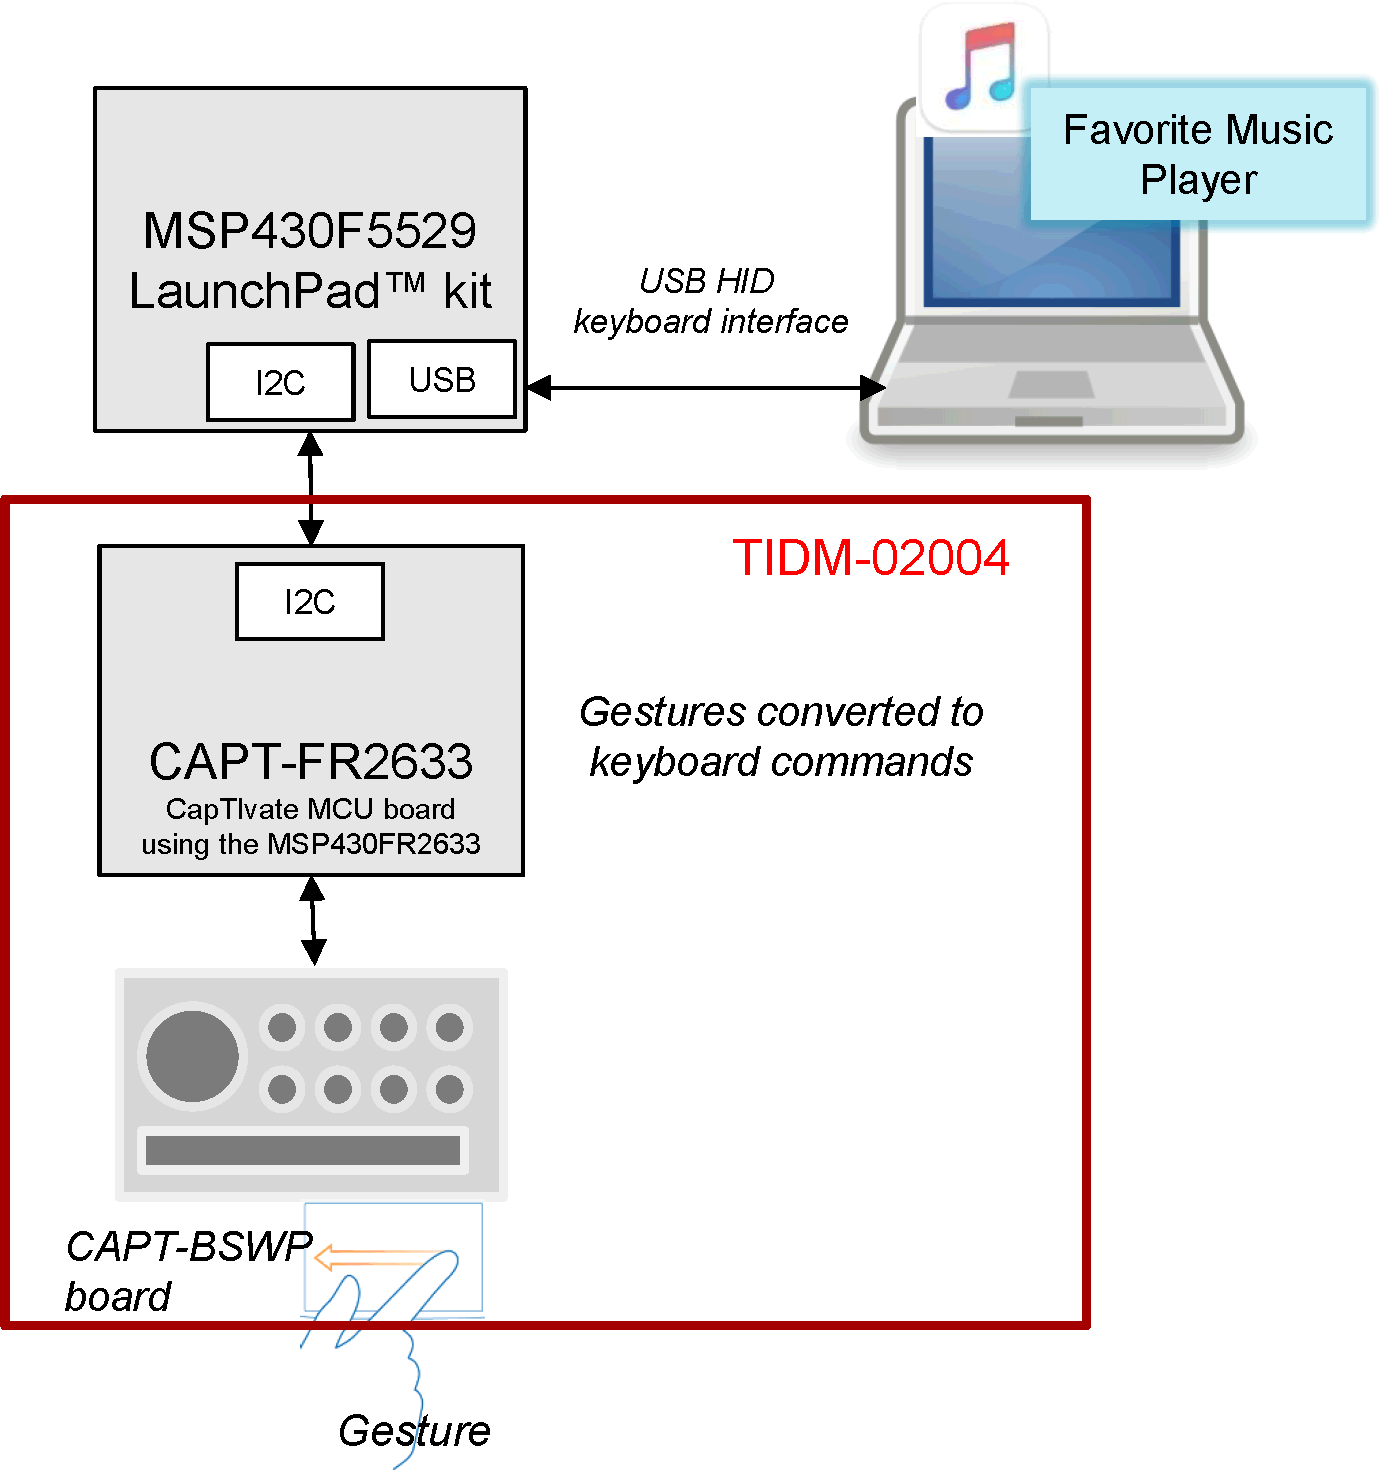 TIDM-02004 tidm-02004-block-diagram.png